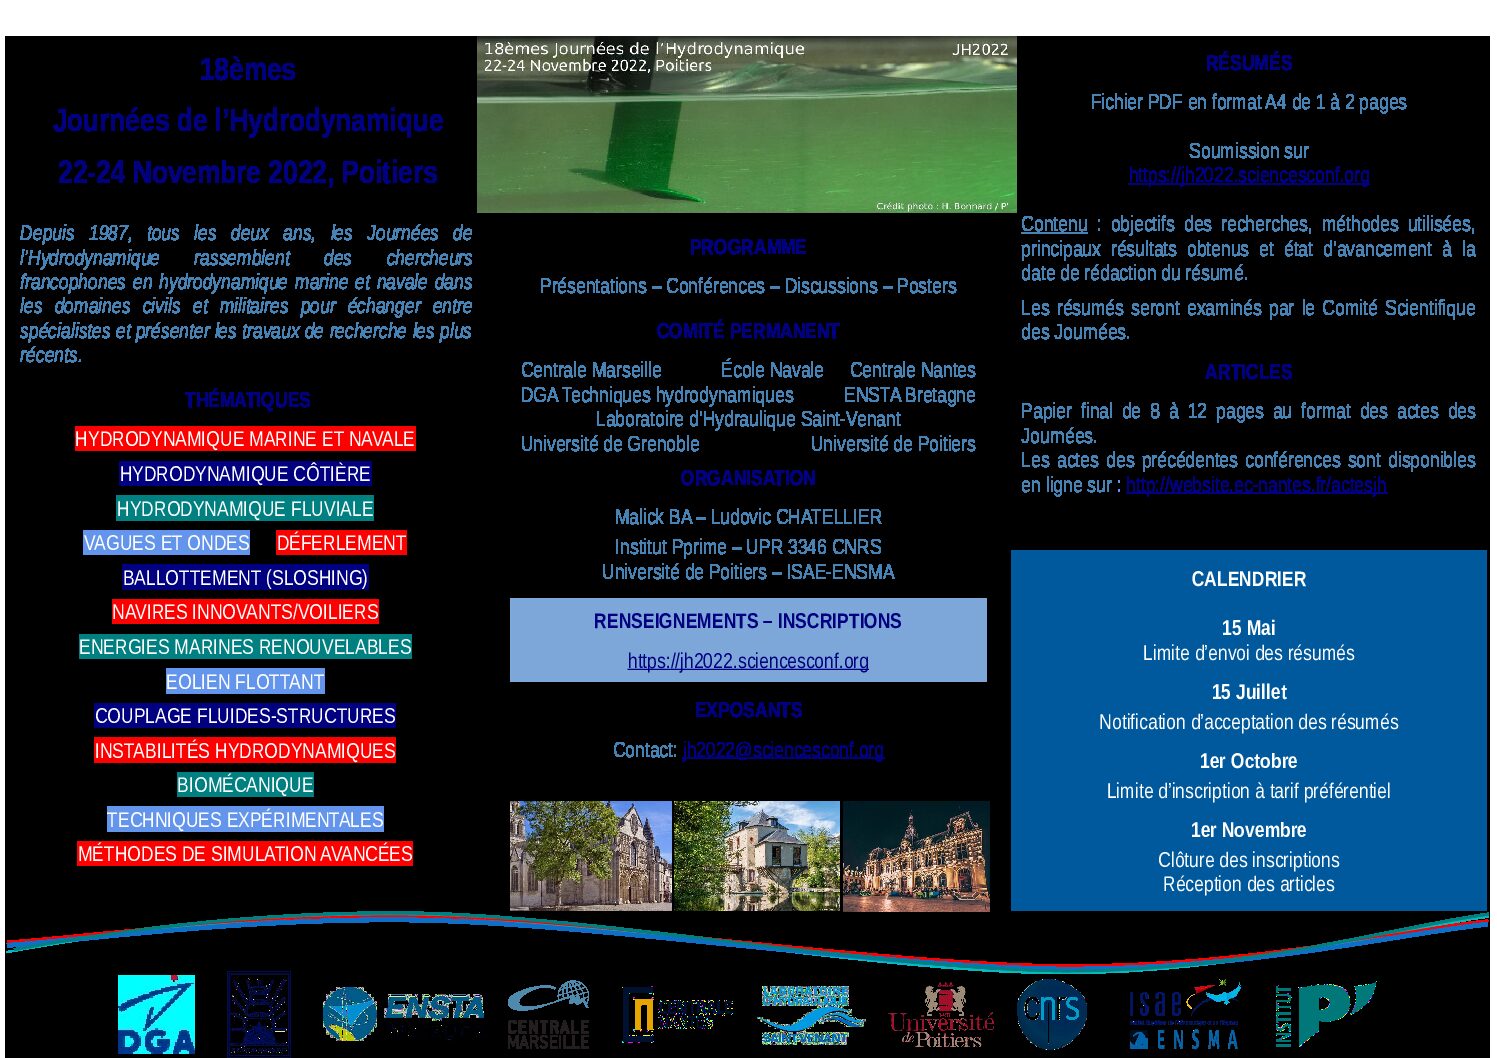 18èmes Journées de l’Hydrodynamique, Poitiers 22-24 Nov. 2022